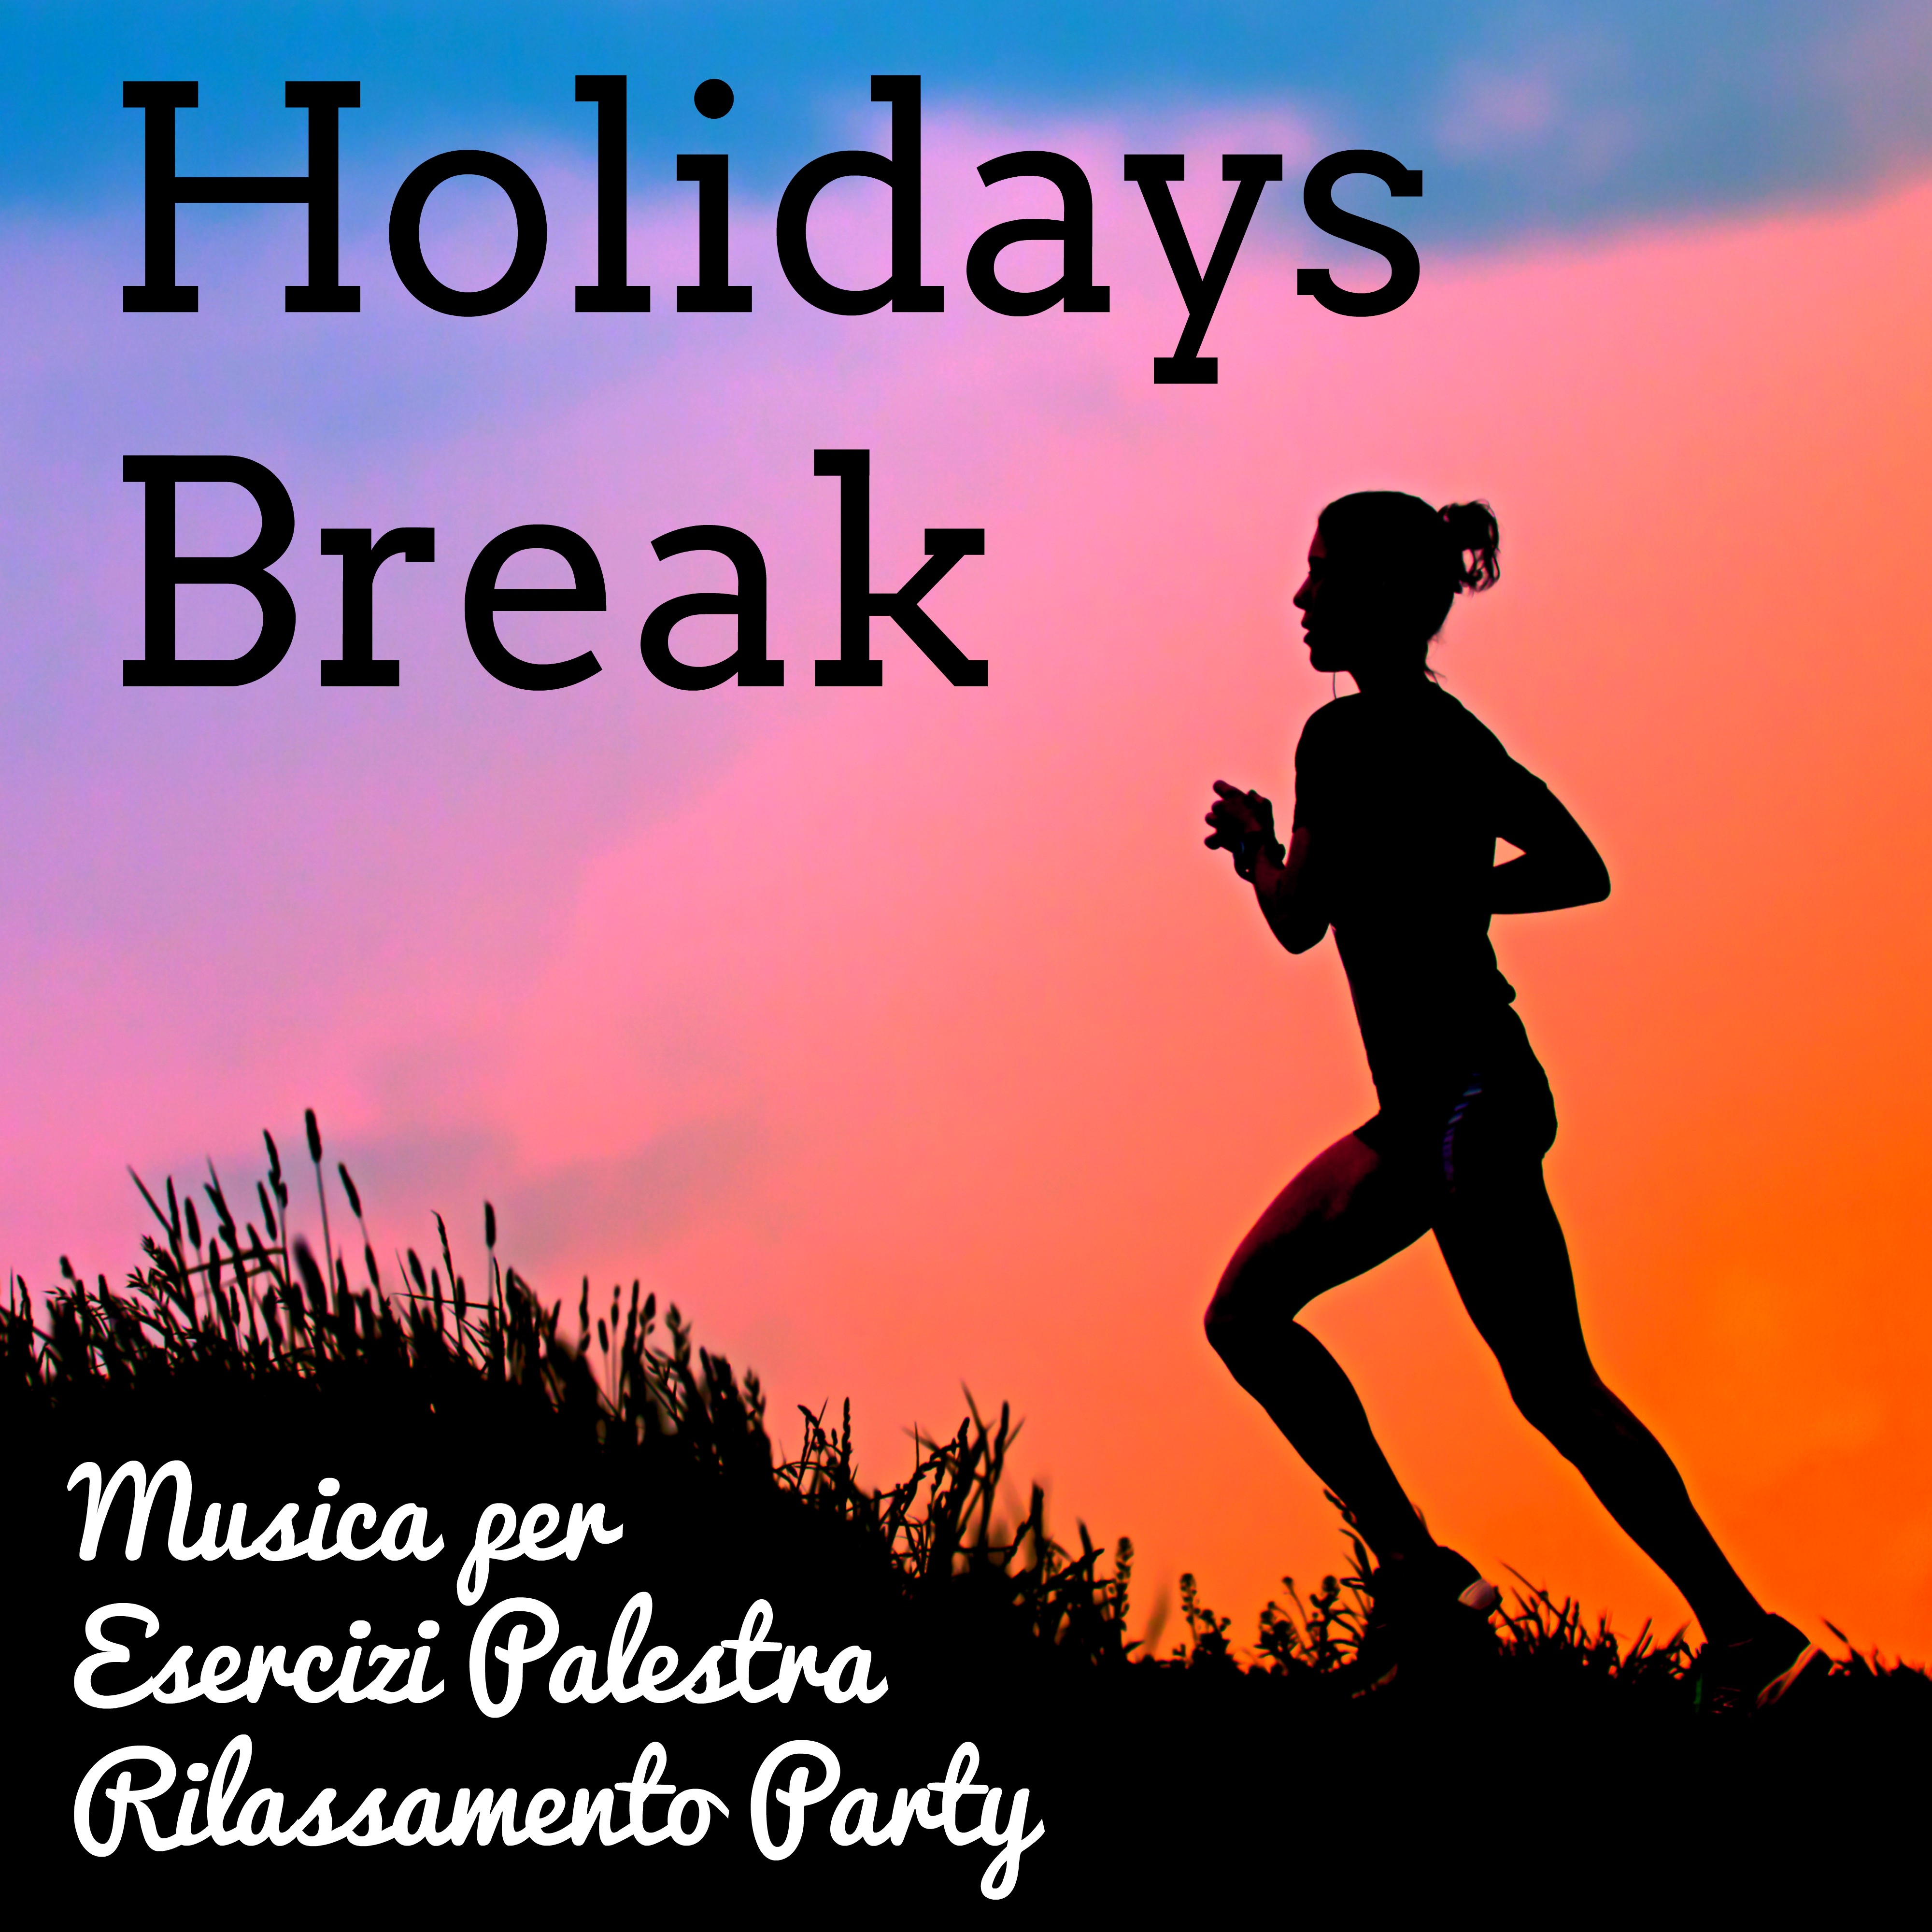 Holidays Break - Musica per Esercizi Palestra Rilassamento Party con Suoni Lounge House Elettronici Soulful